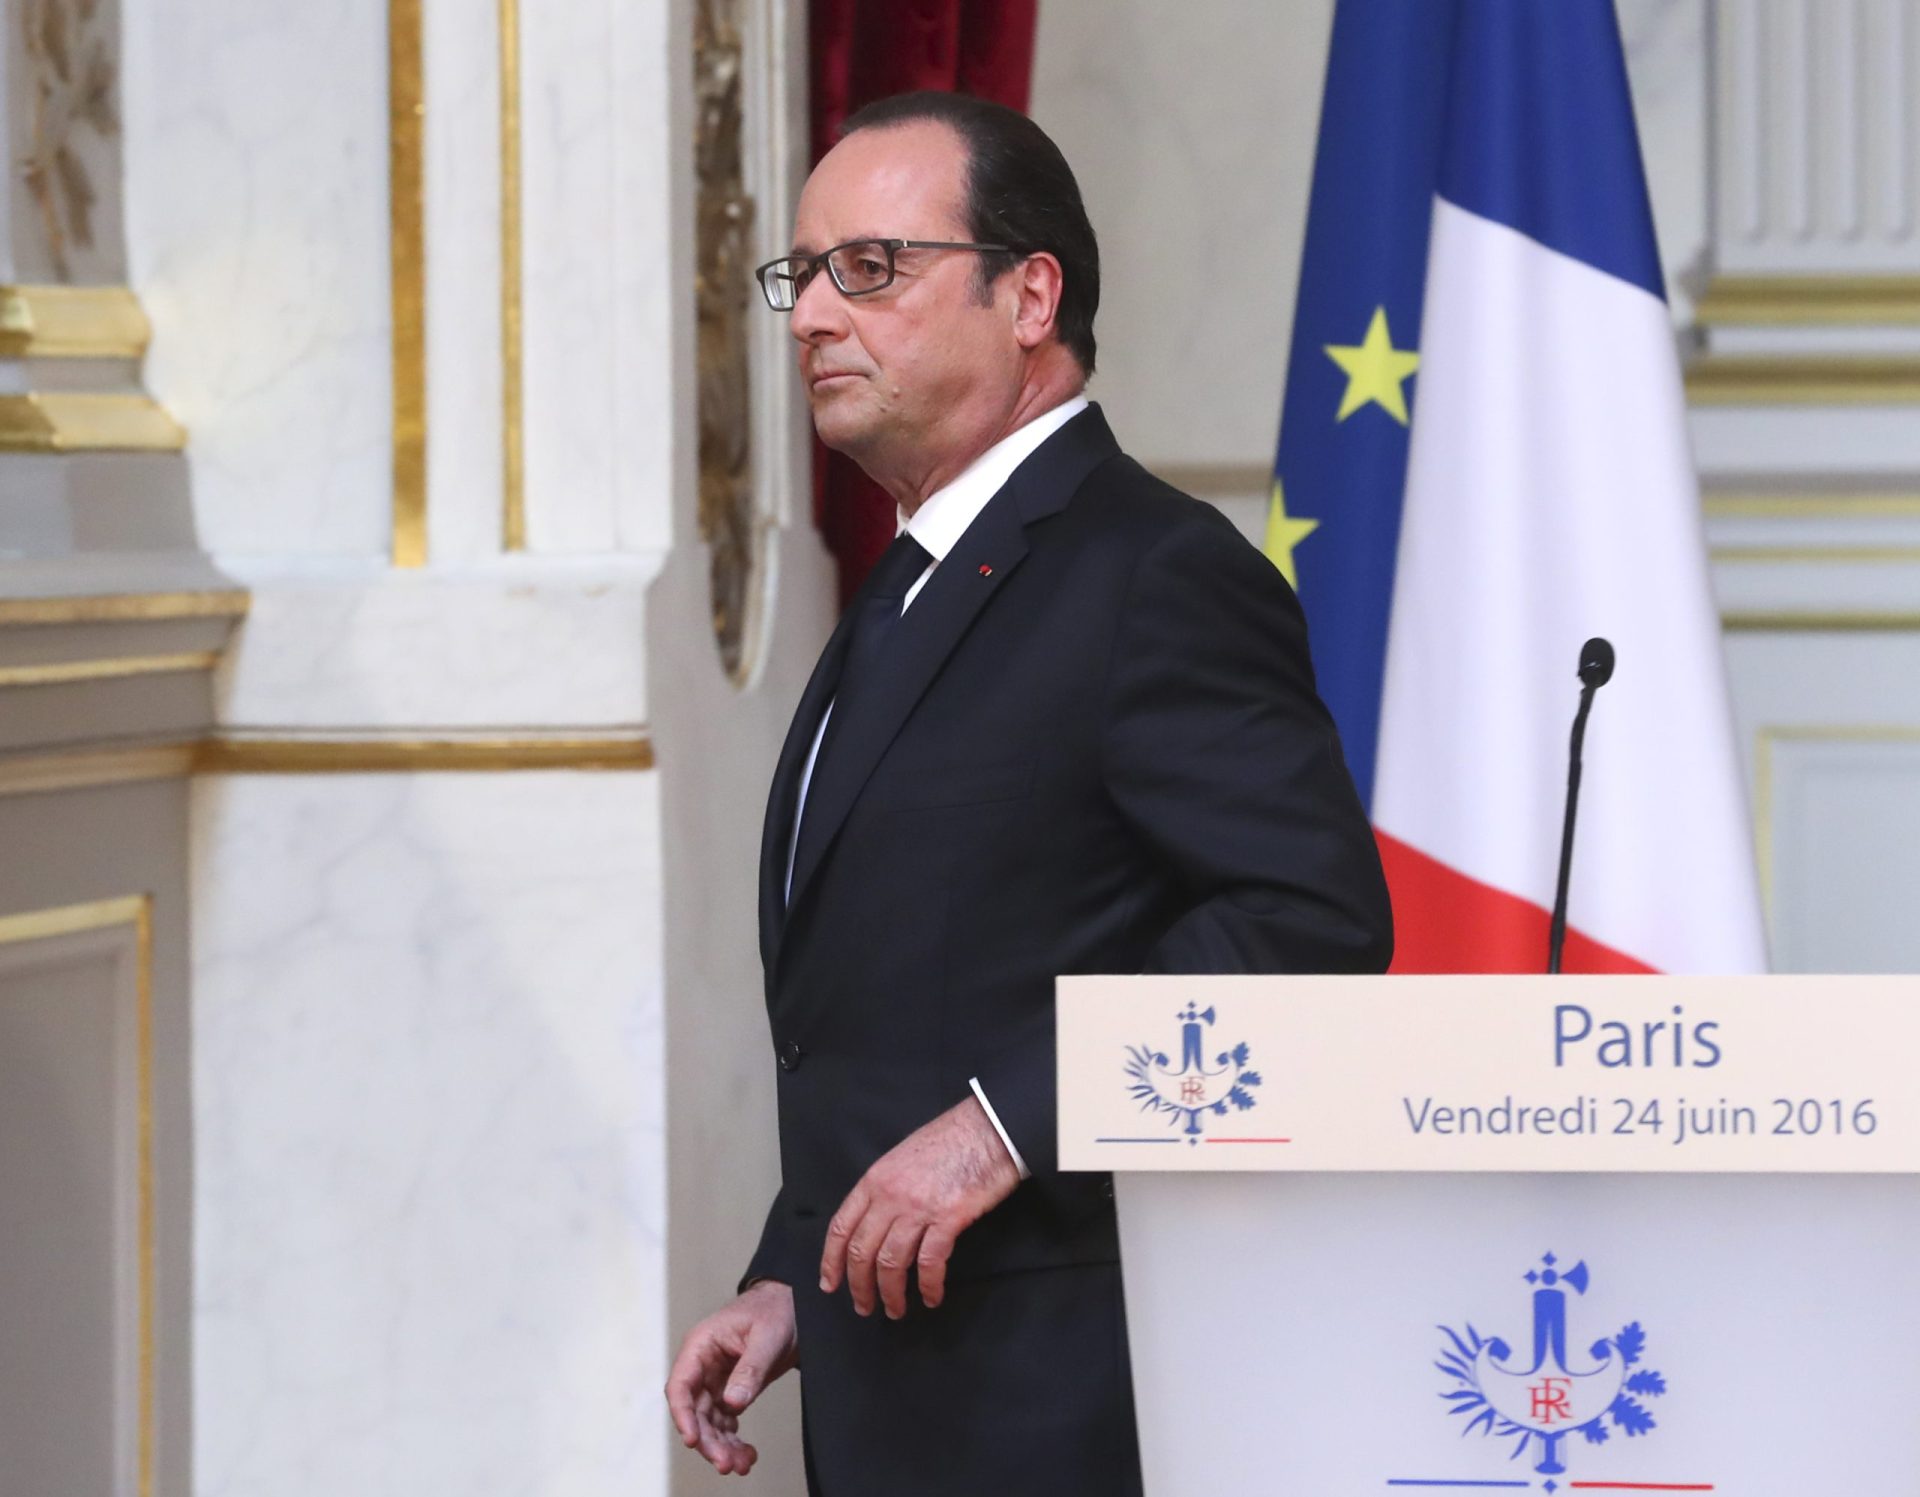 “Voto dos britânicos põe a Europa à prova”, diz François Hollande